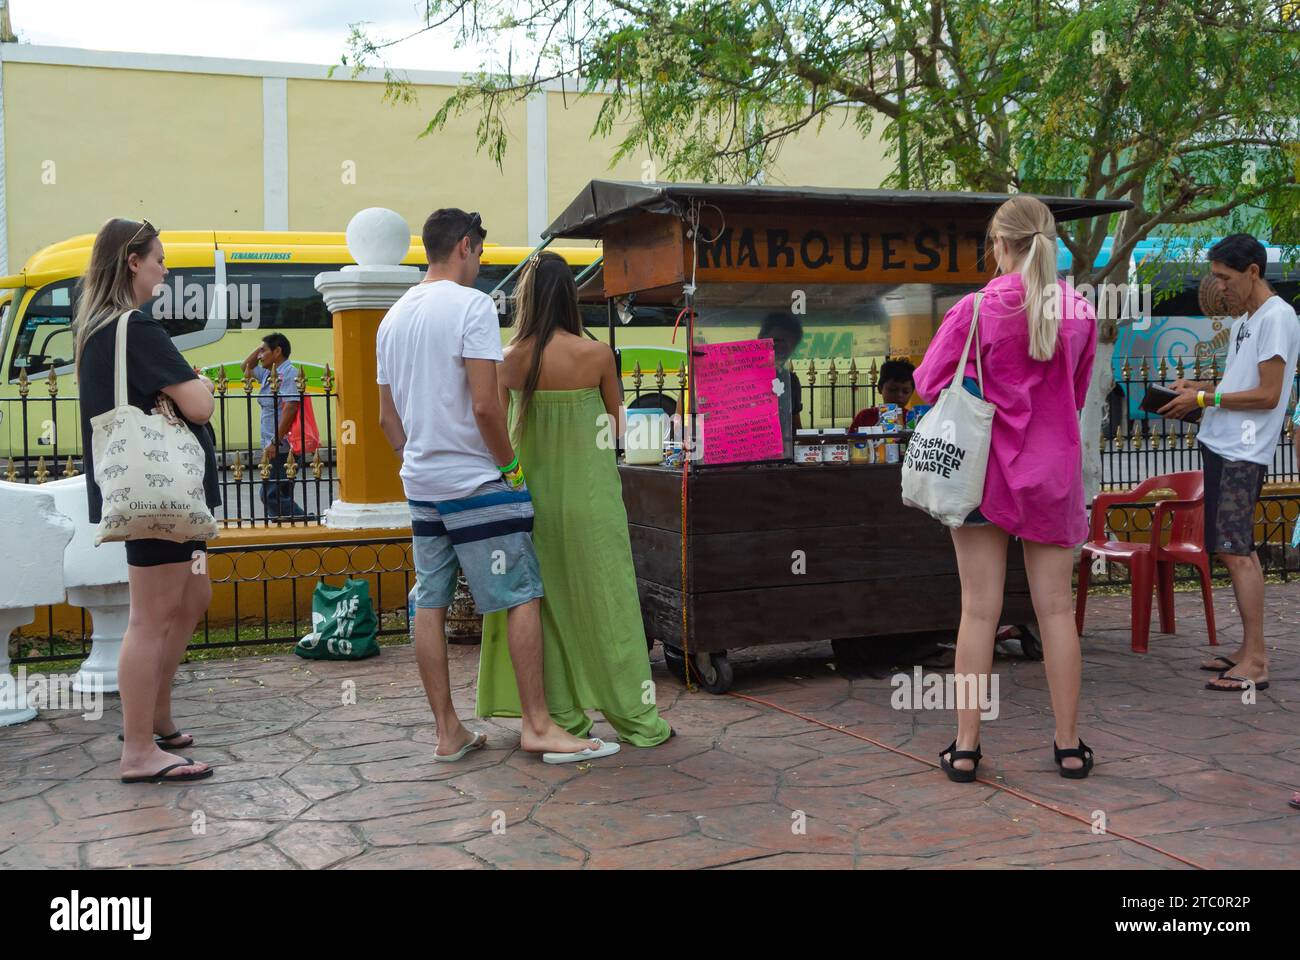 Valladolid, Yucatan, Mexique, les touristes achètent des marquisitas à un stand dans le parc, éditorial seulement. Banque D'Images